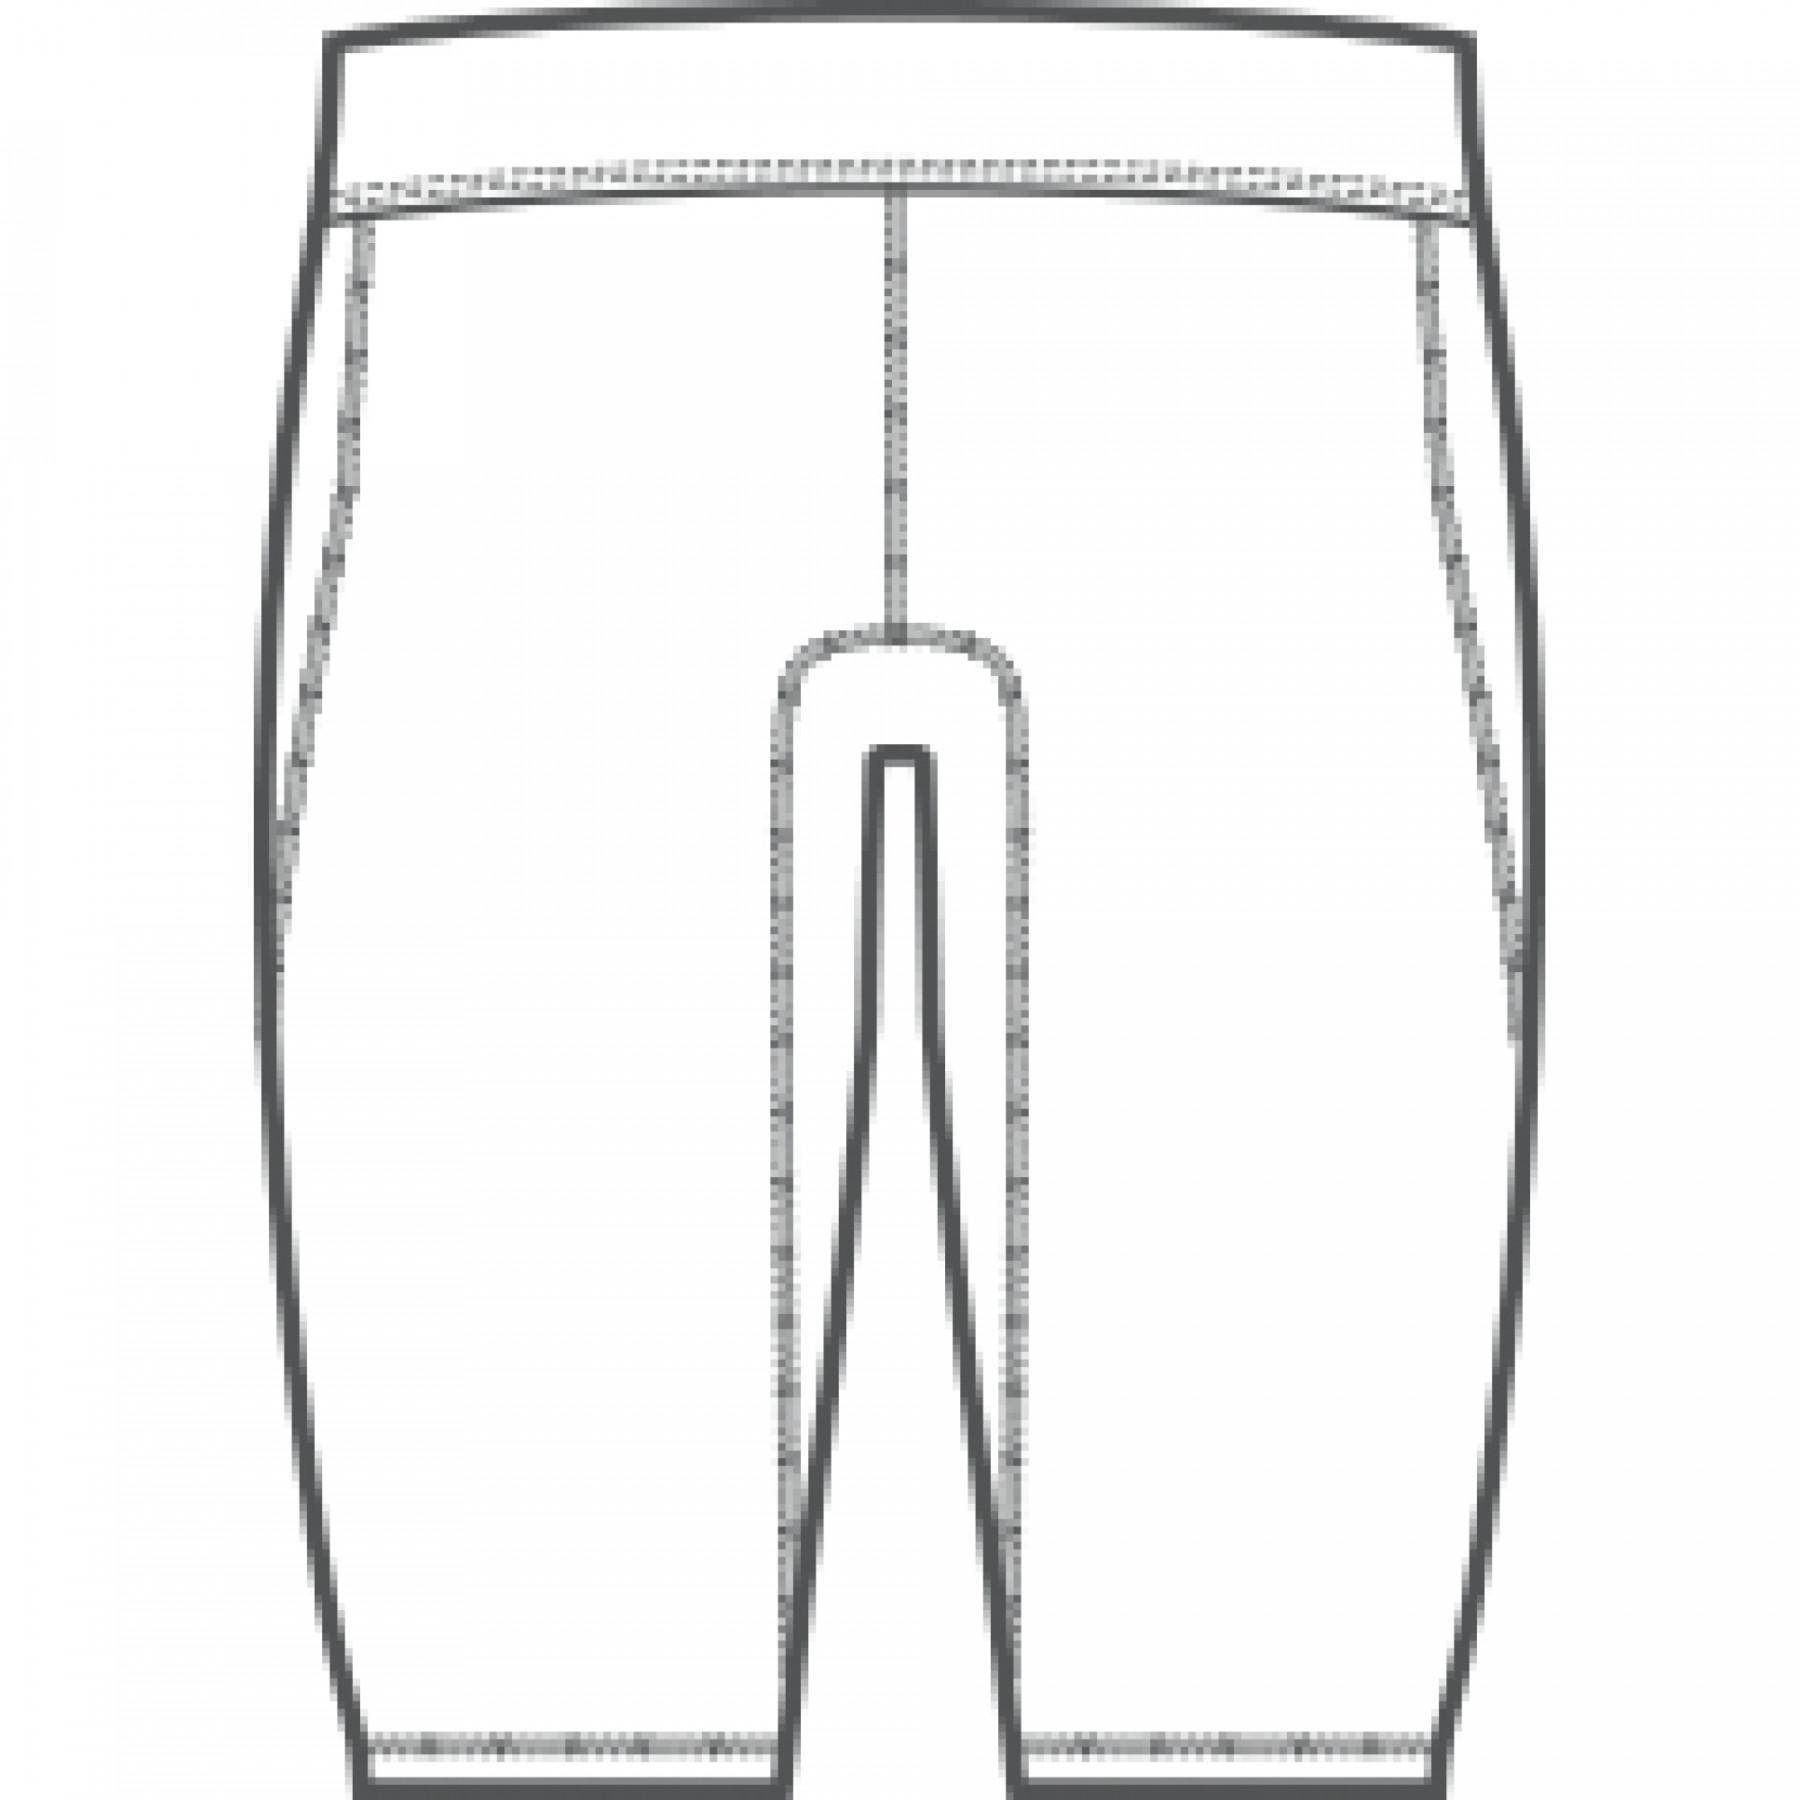 Children's compression shorts adidas Alphaskin